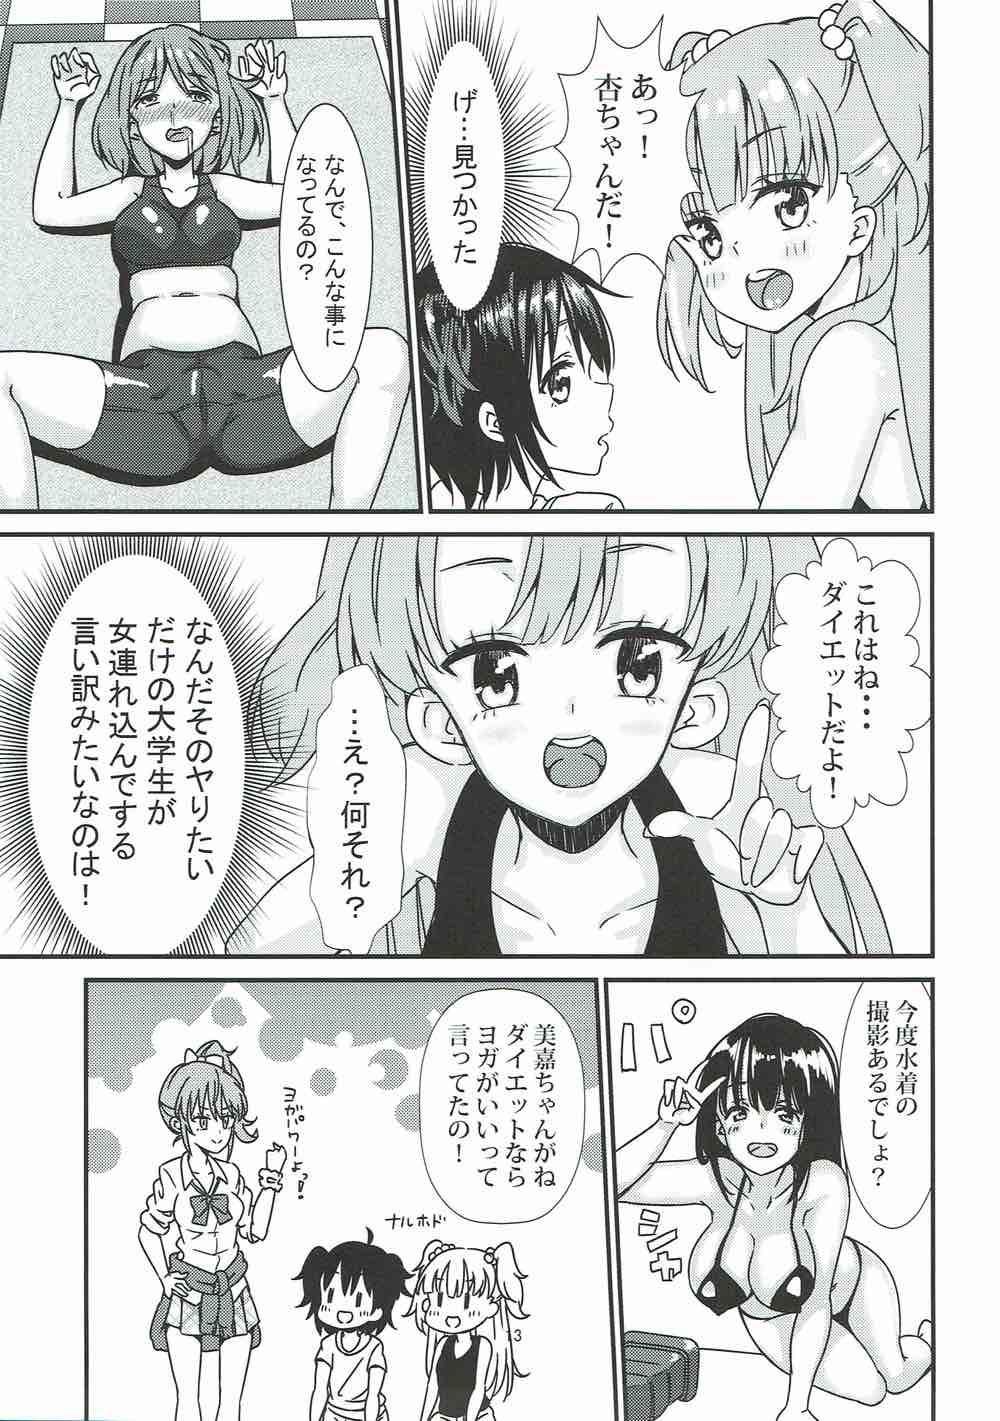 Relax Rika Miria no Taigai-shiki Porchio Miki Miki Massage - The idolmaster Gaystraight - Page 12